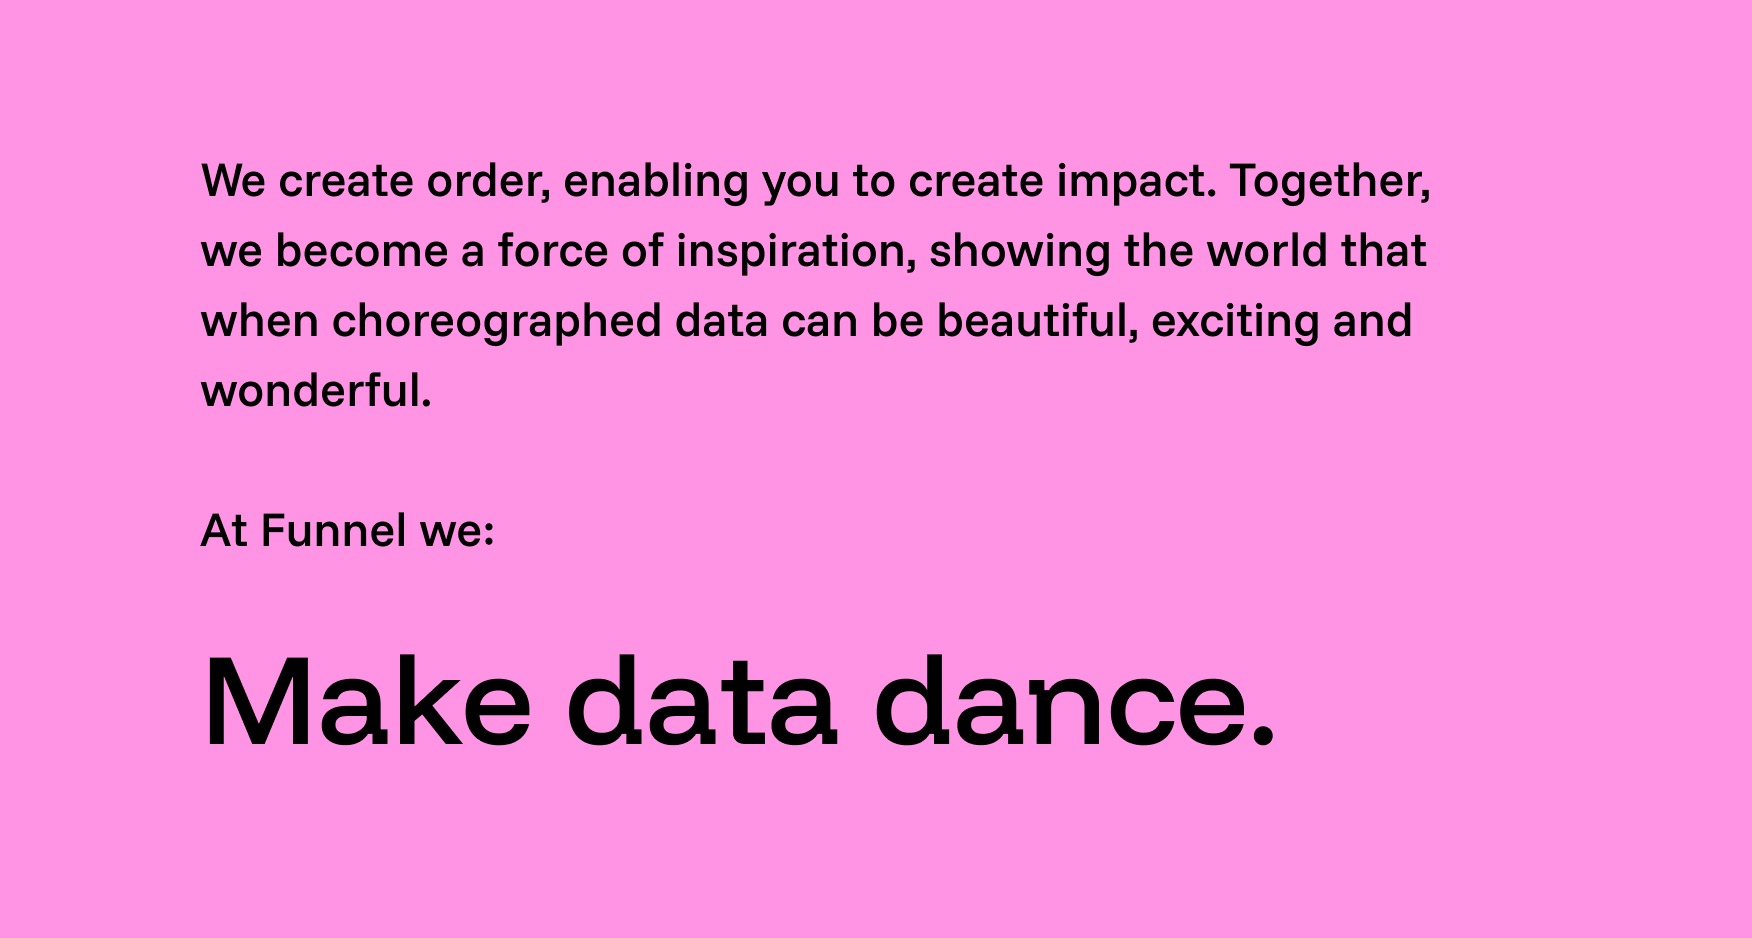 Make data dance